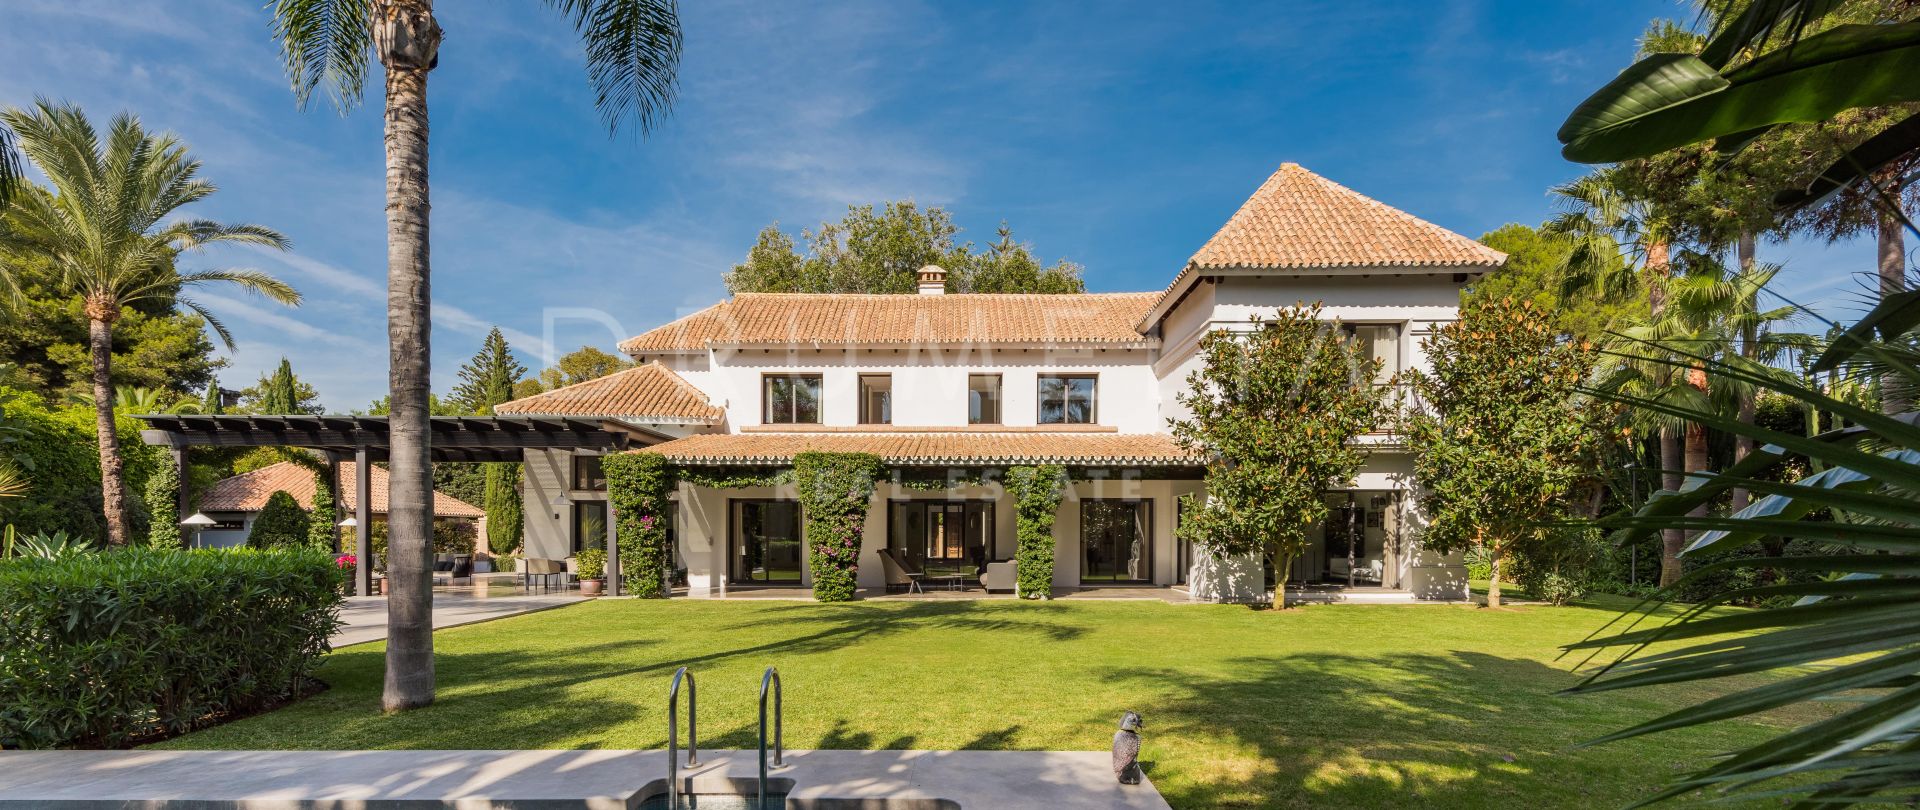 Wunderschöne moderne mediterrane Villa, Las Mimosas, Puerto Banus, Marbella